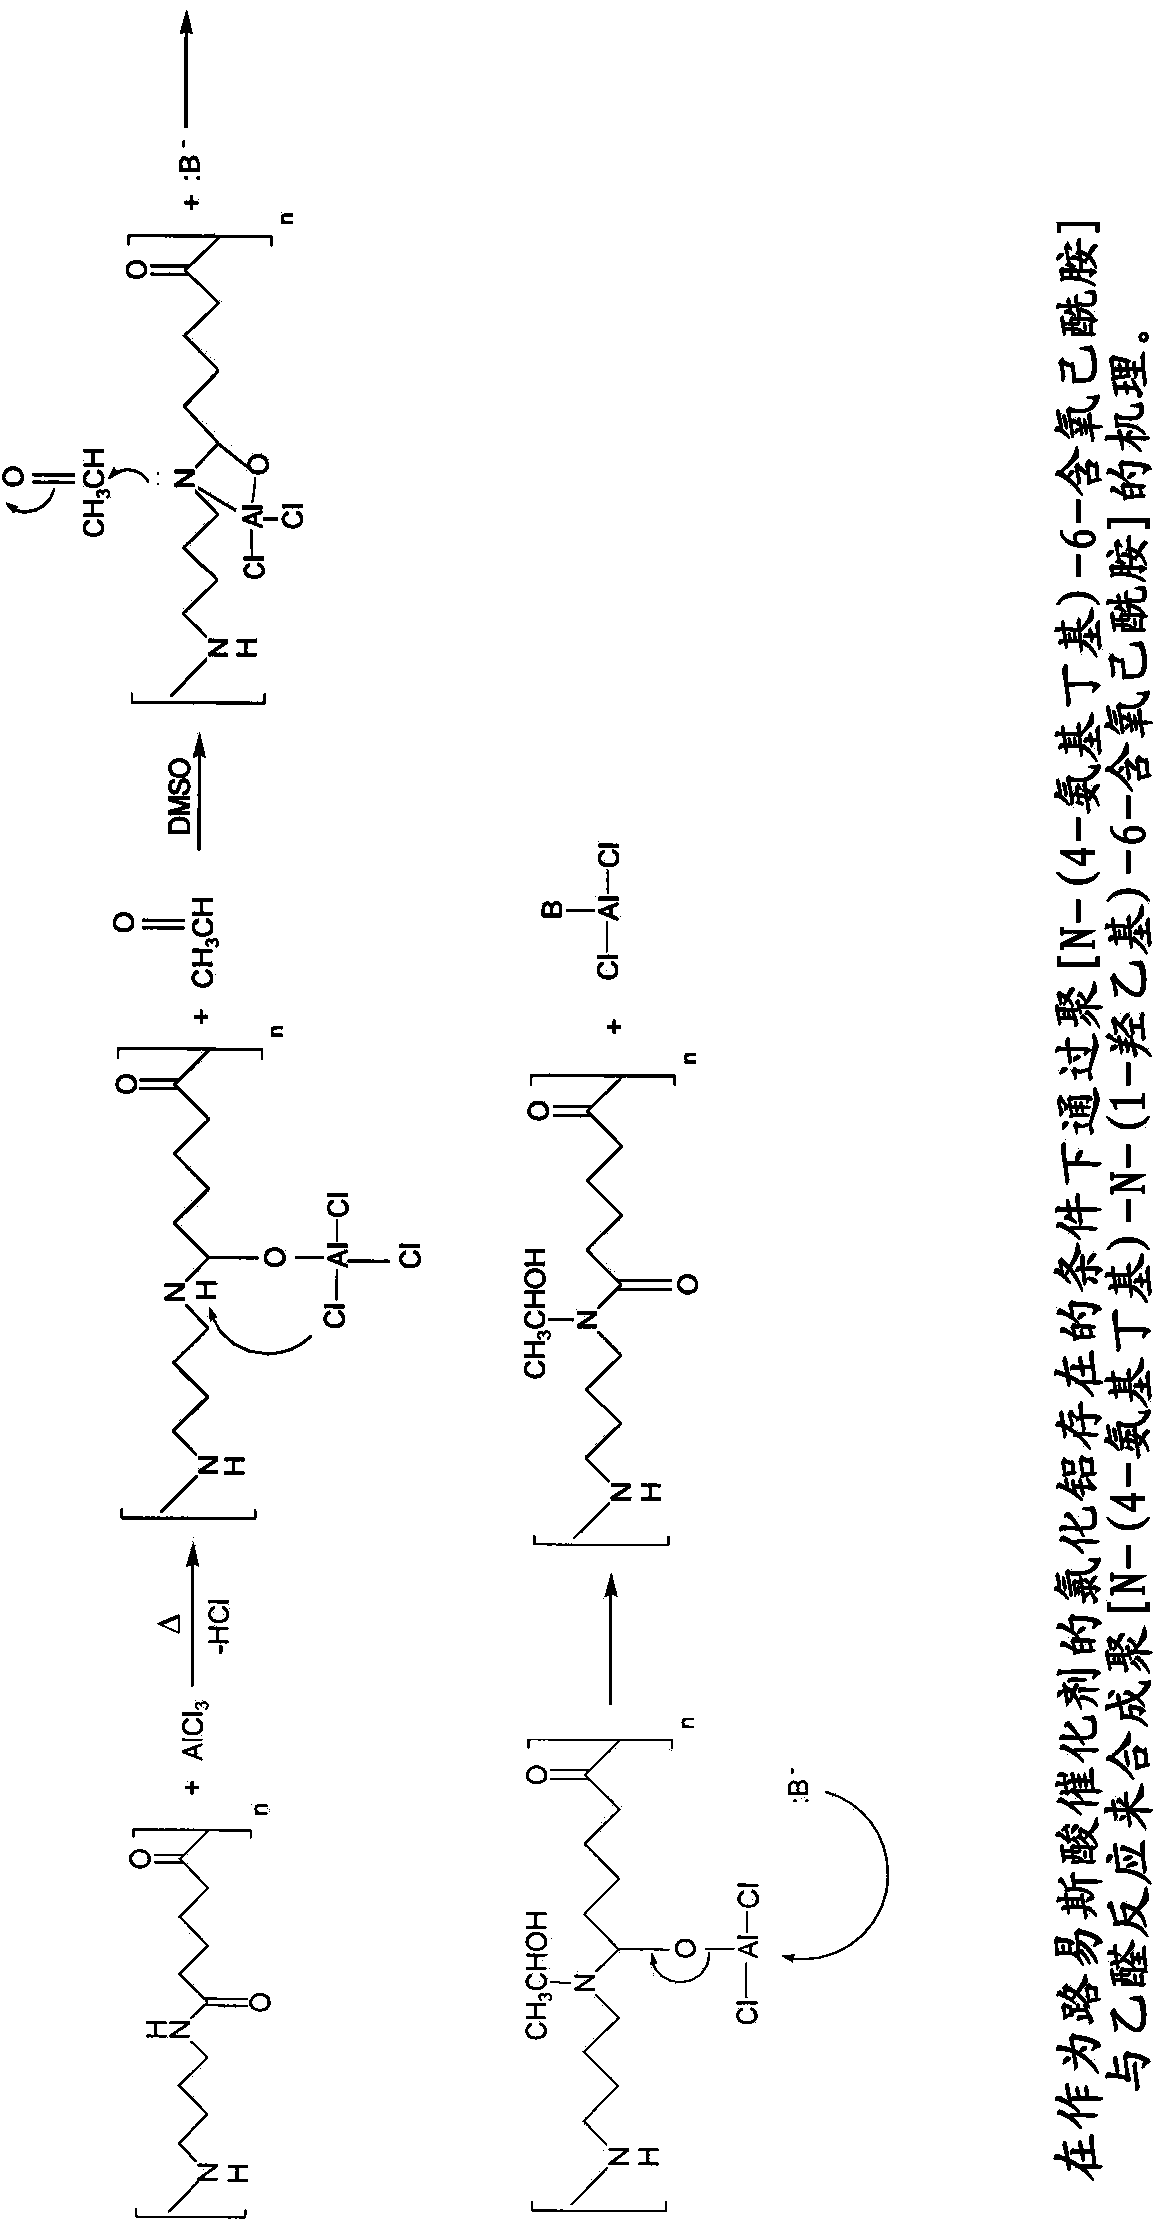 Bulk hydrophilic funtionalization of polyamide 46